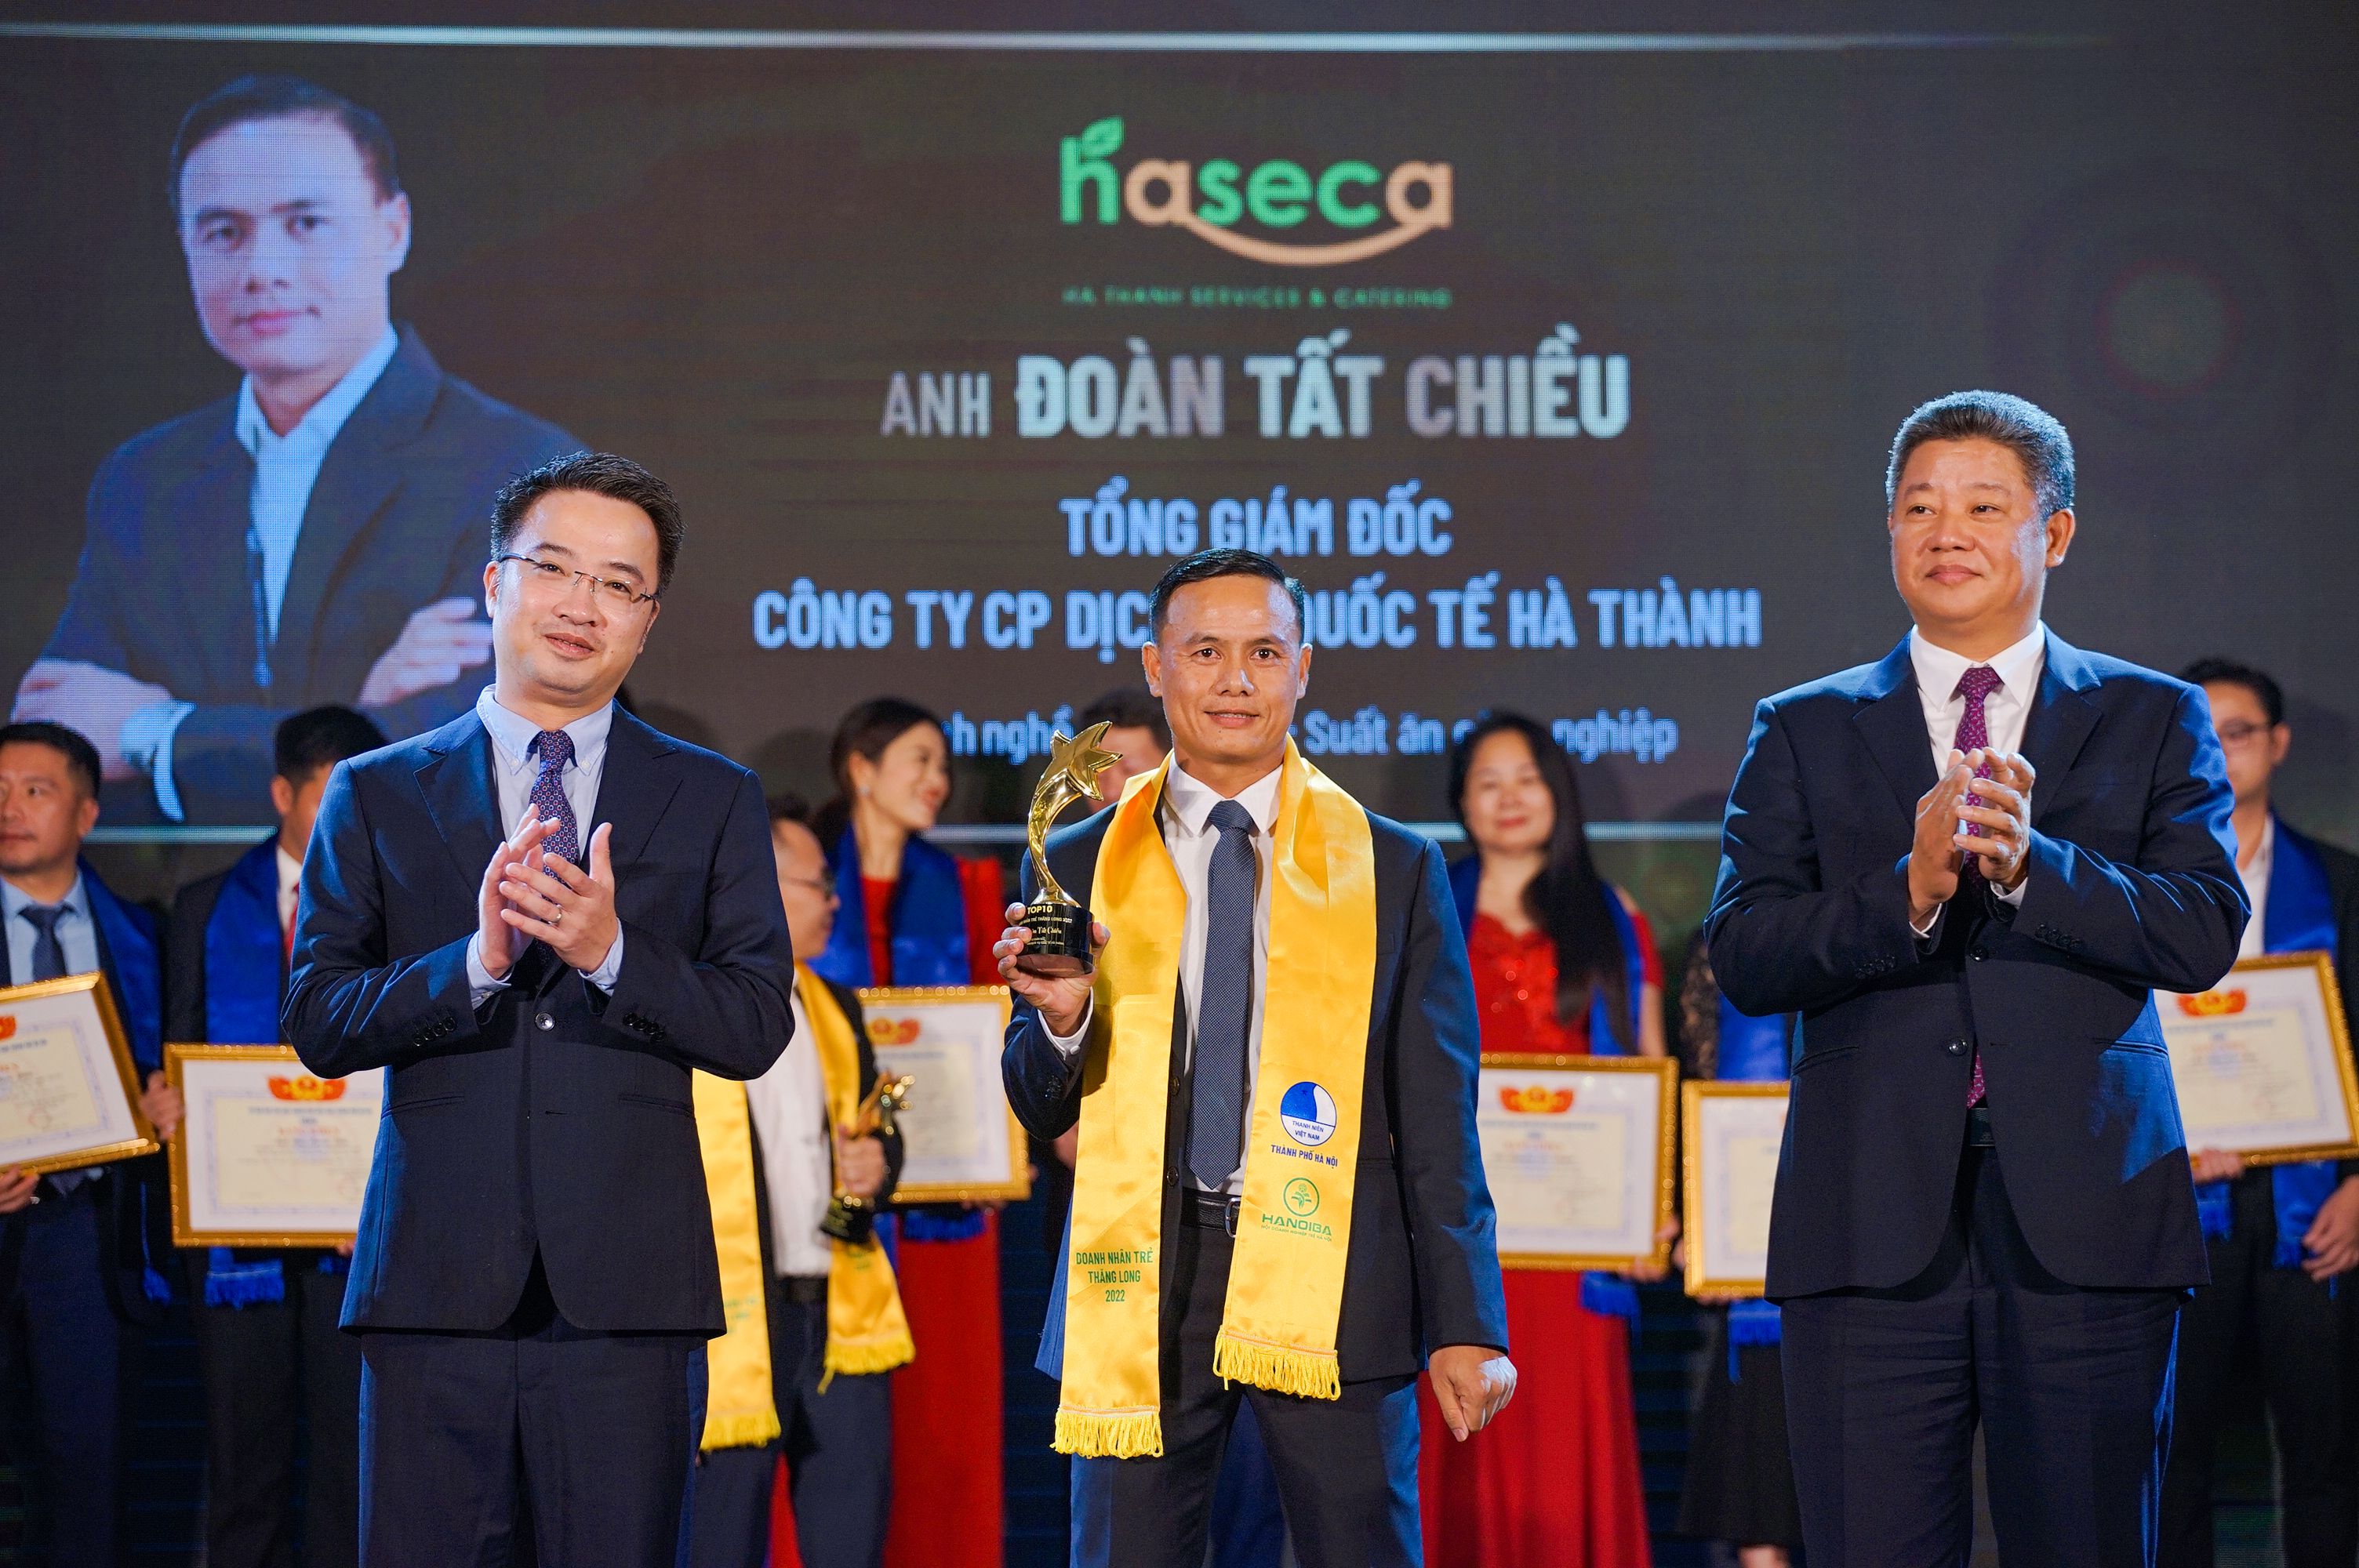 CEO Đoàn Tất Chiều suất sắc nhận giải thưởng "Top 10 doanh nhân trẻ Thăng Long 2022"